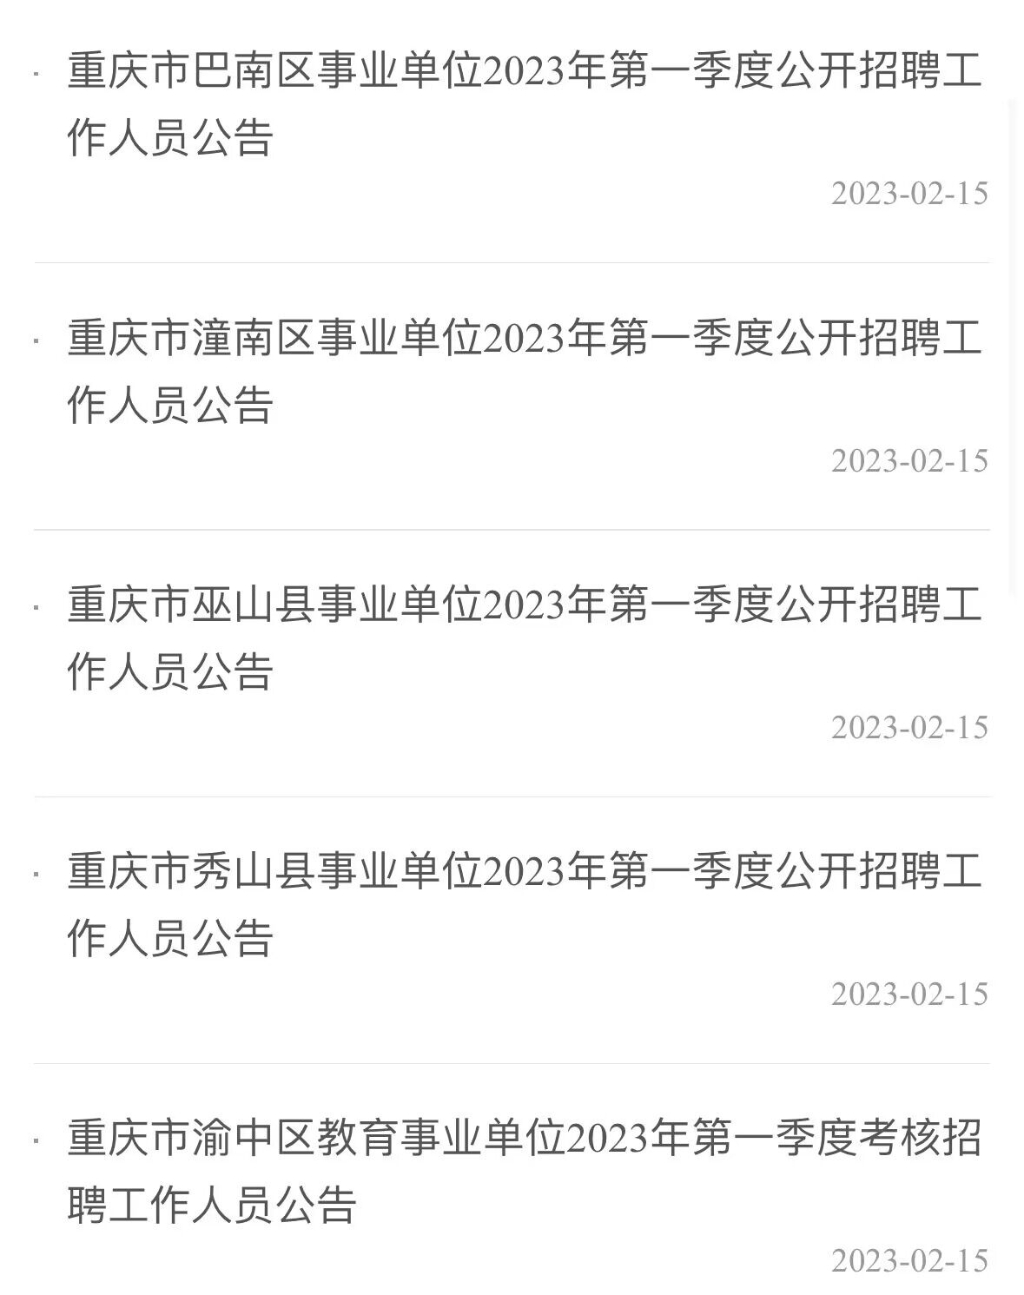 重庆市人力社保局官网发布了一批事业单位招聘信息。来源 网络截图